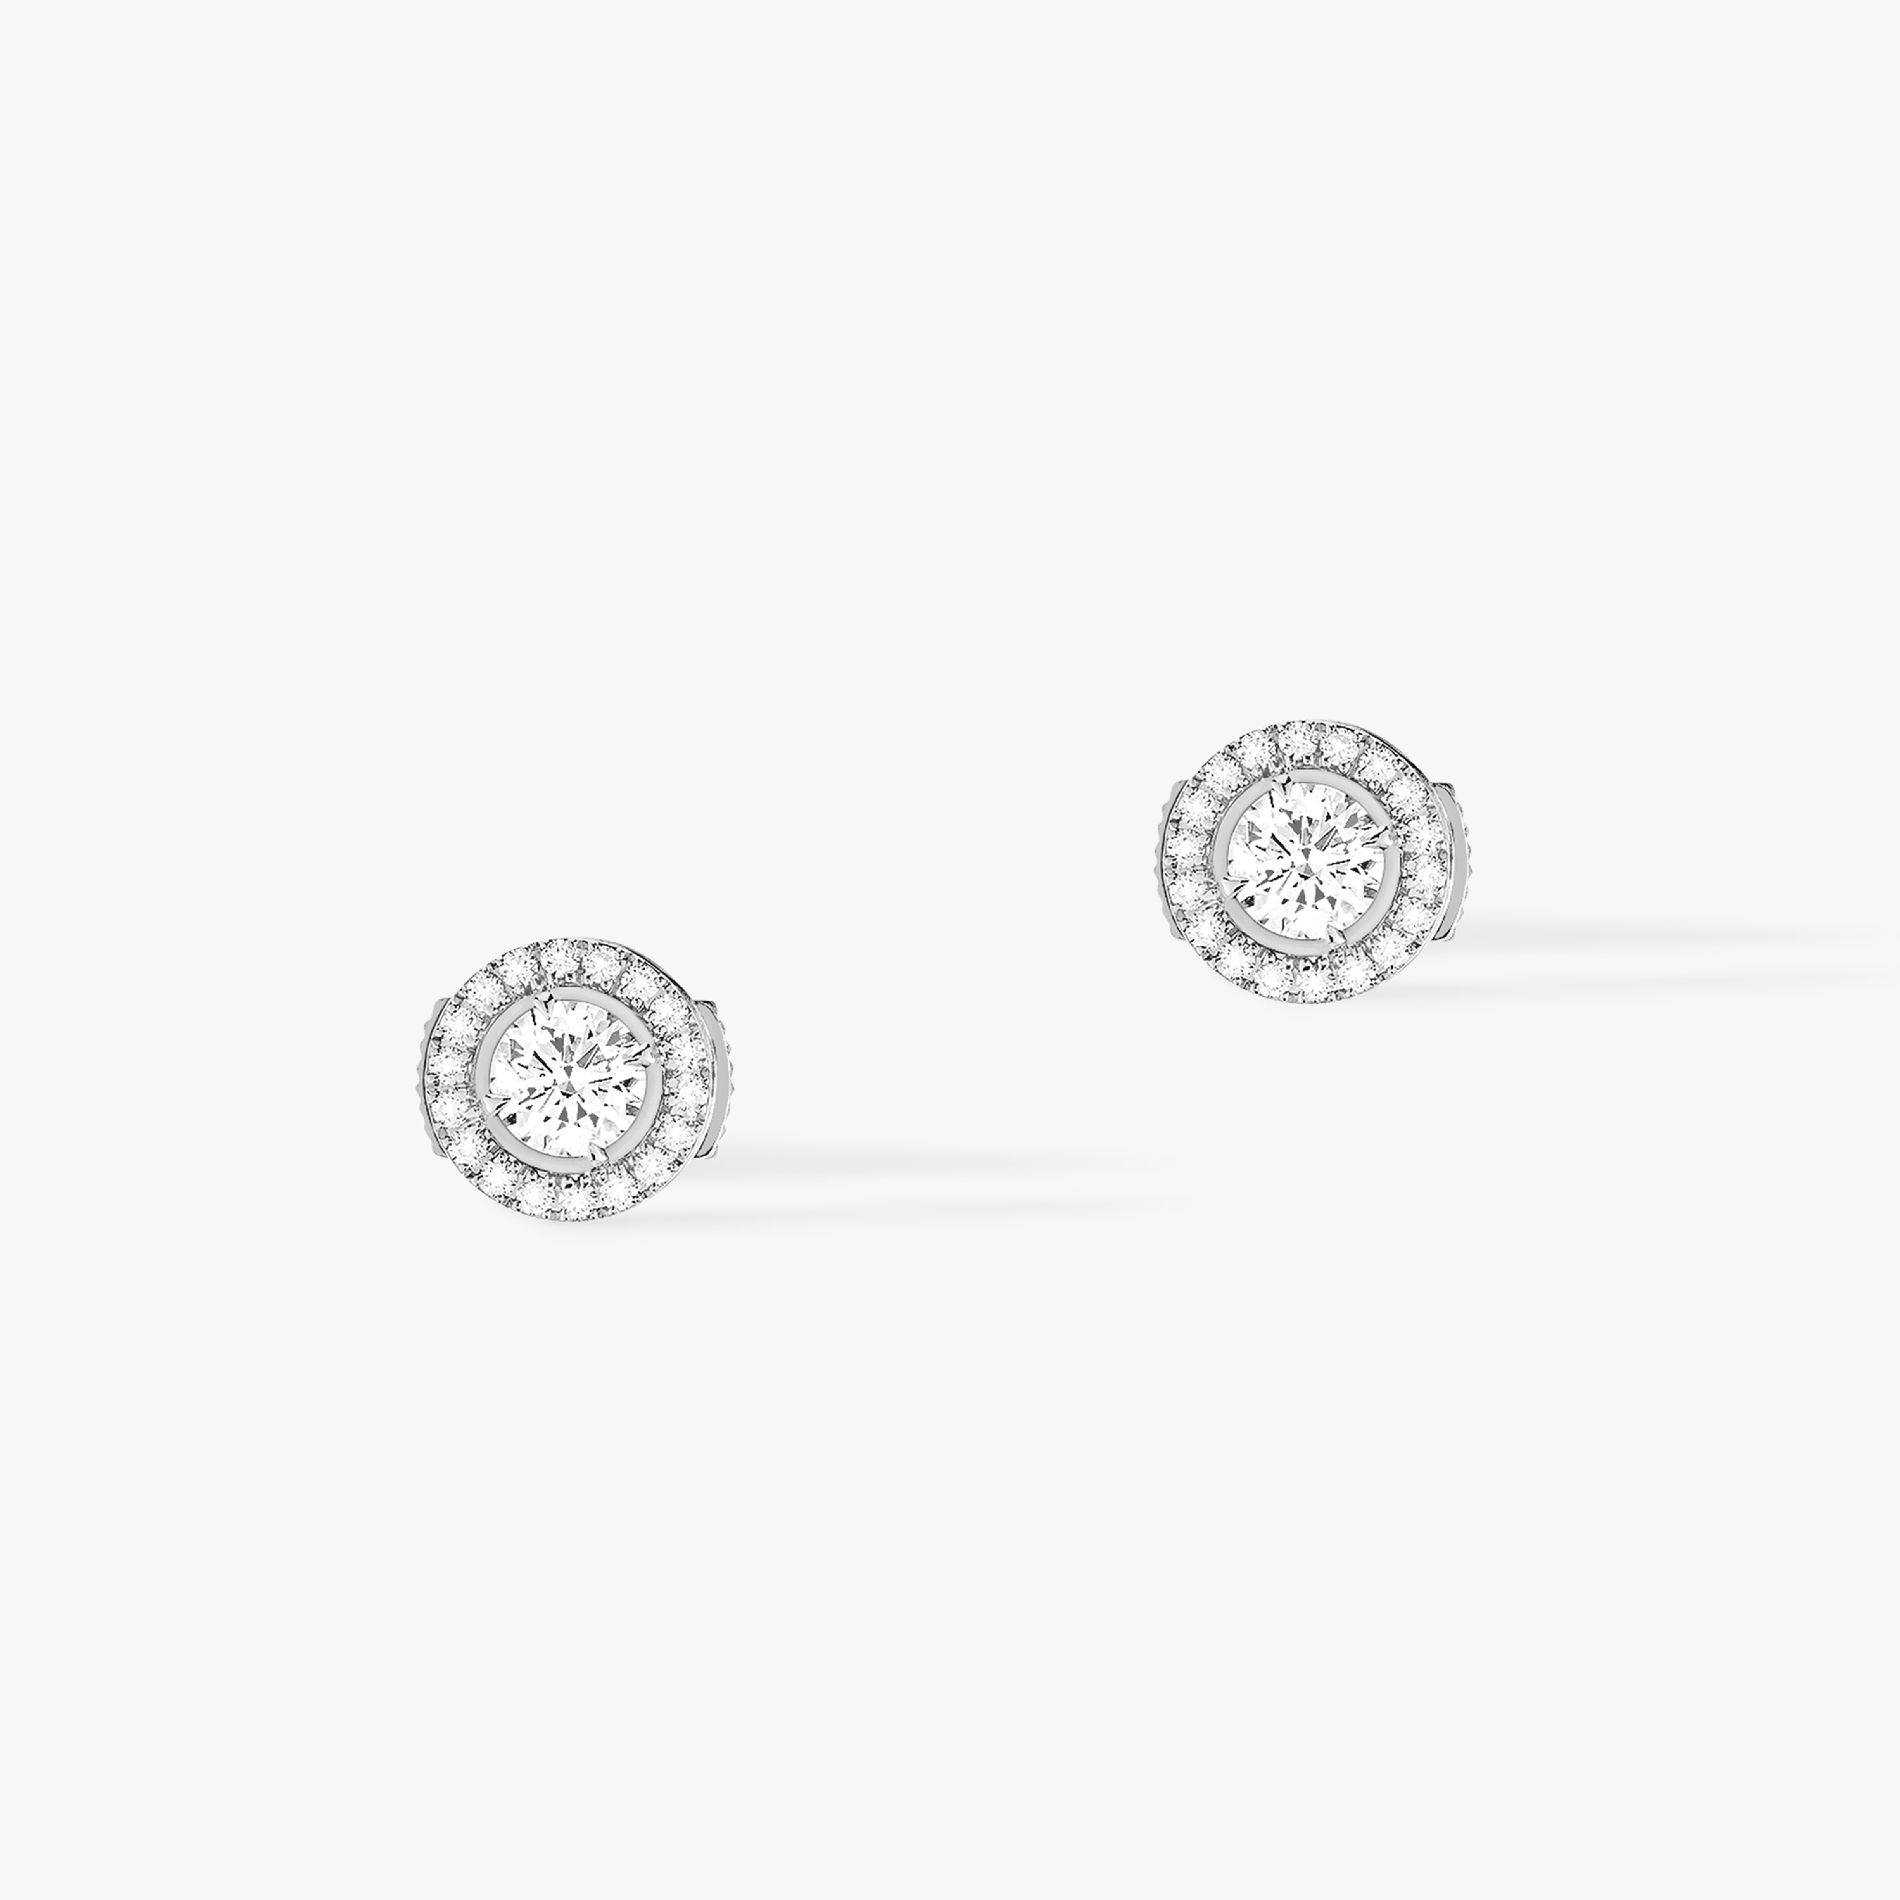 Boucles d'oreilles Femme Or Blanc Diamond Joy diamants ronds 2x0,25ct 04445-WG